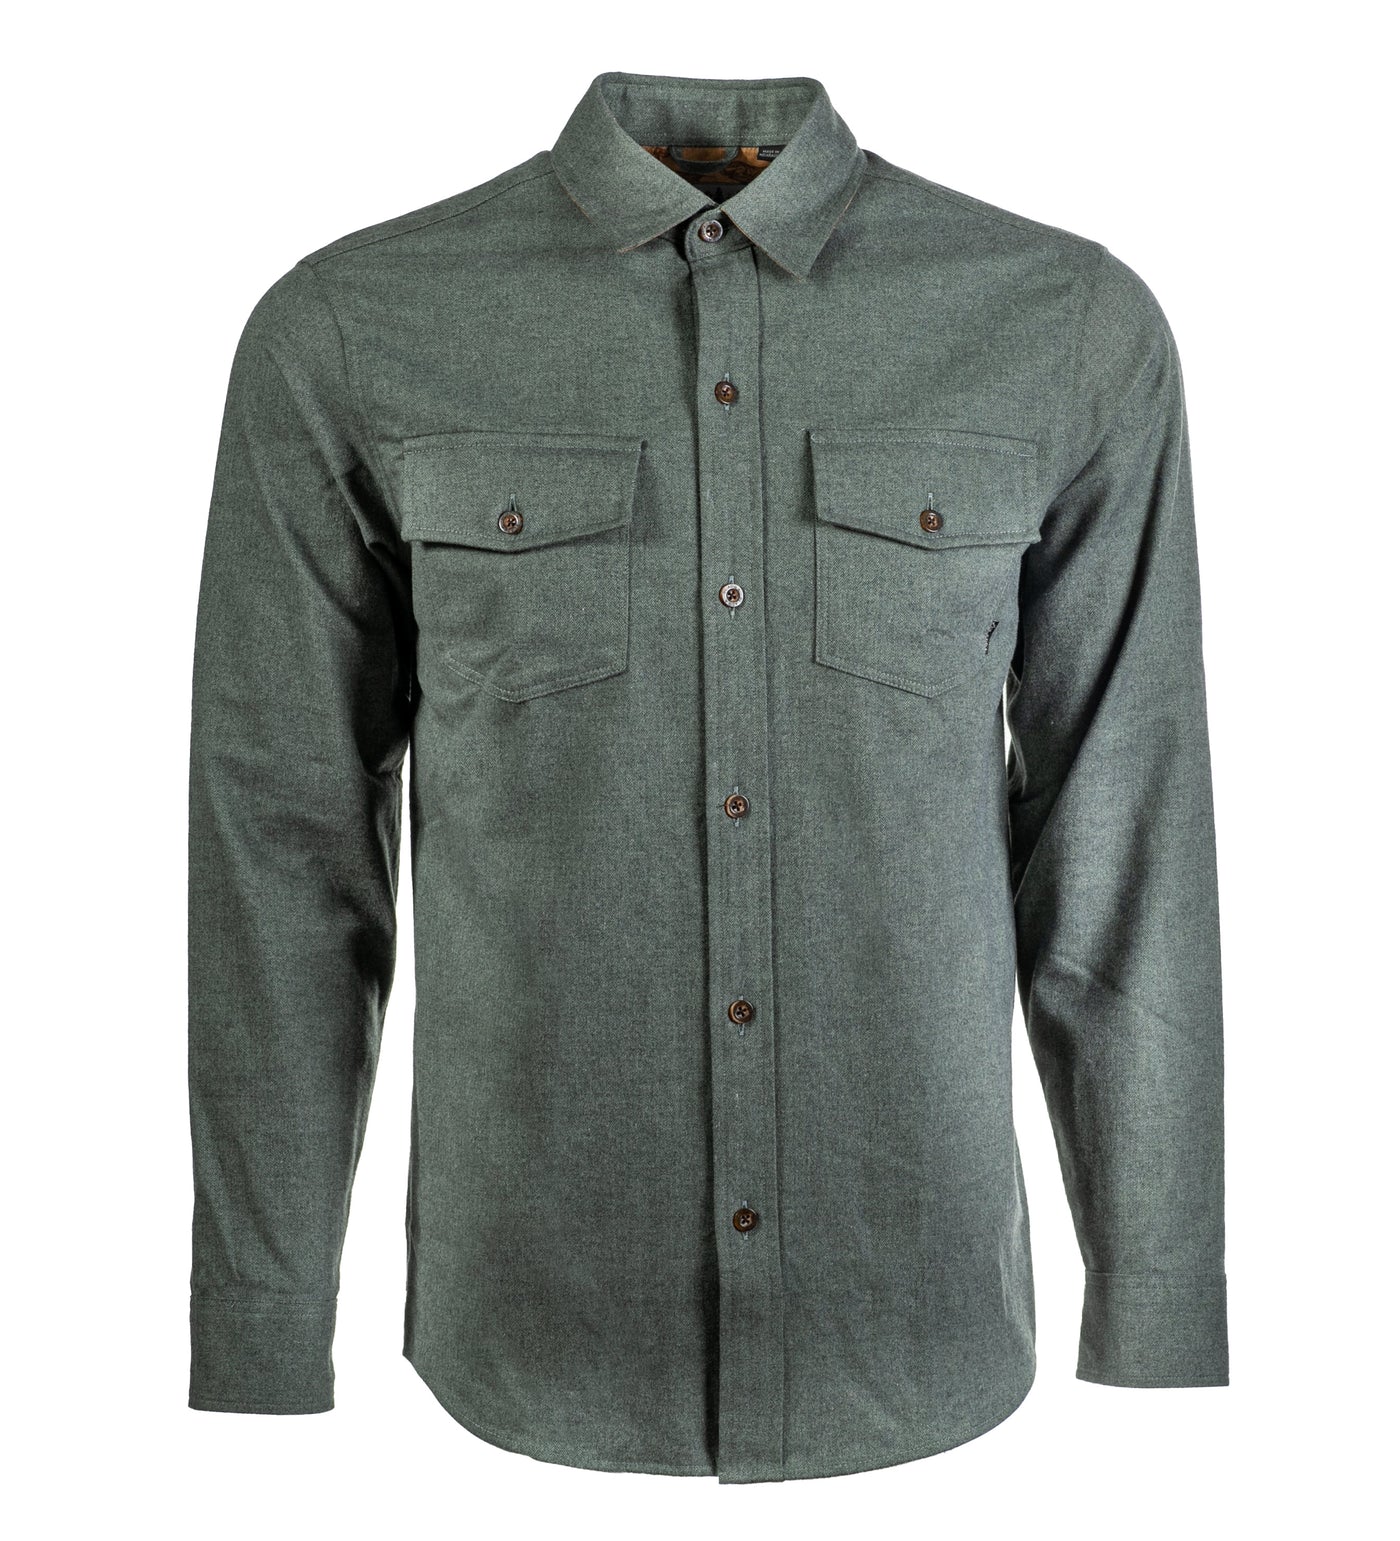 Men's Cascade Elite Flannel Shirt - Loden Green Heather